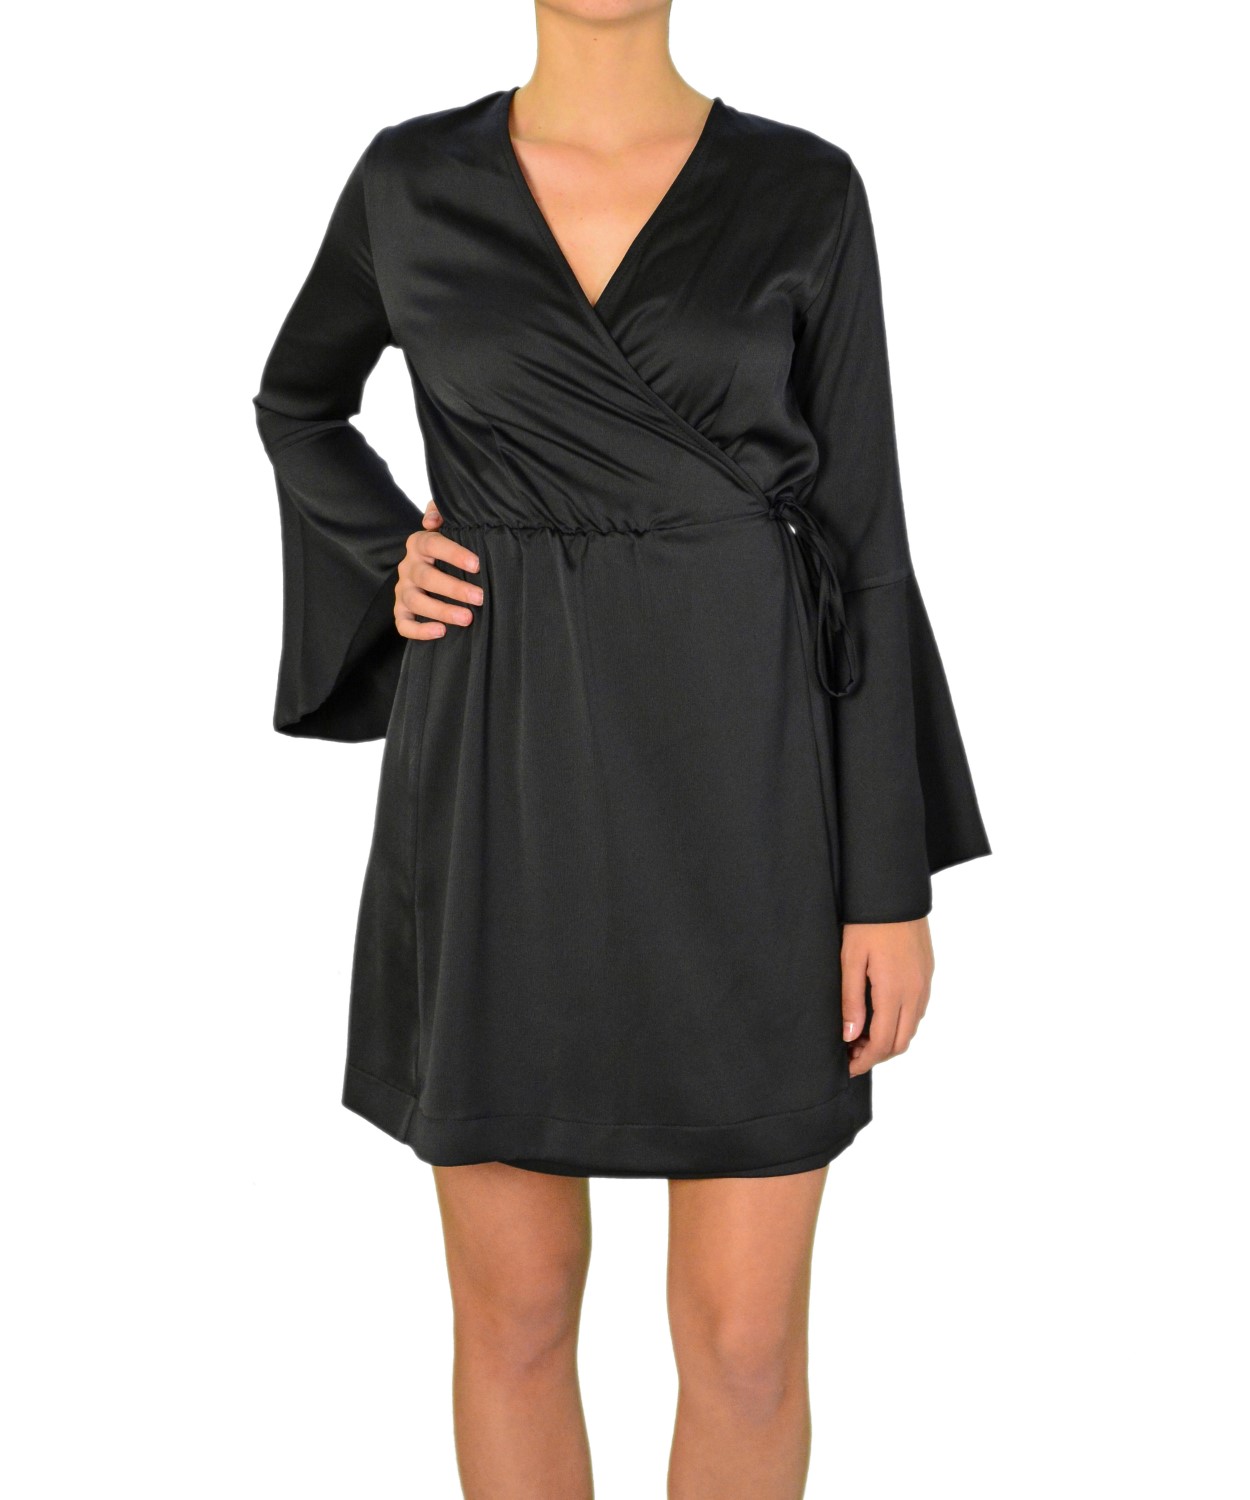 Γυναικείο φόρεμα ντραπέ με καμπάνα στο μανίκι μαύρο 8112199F